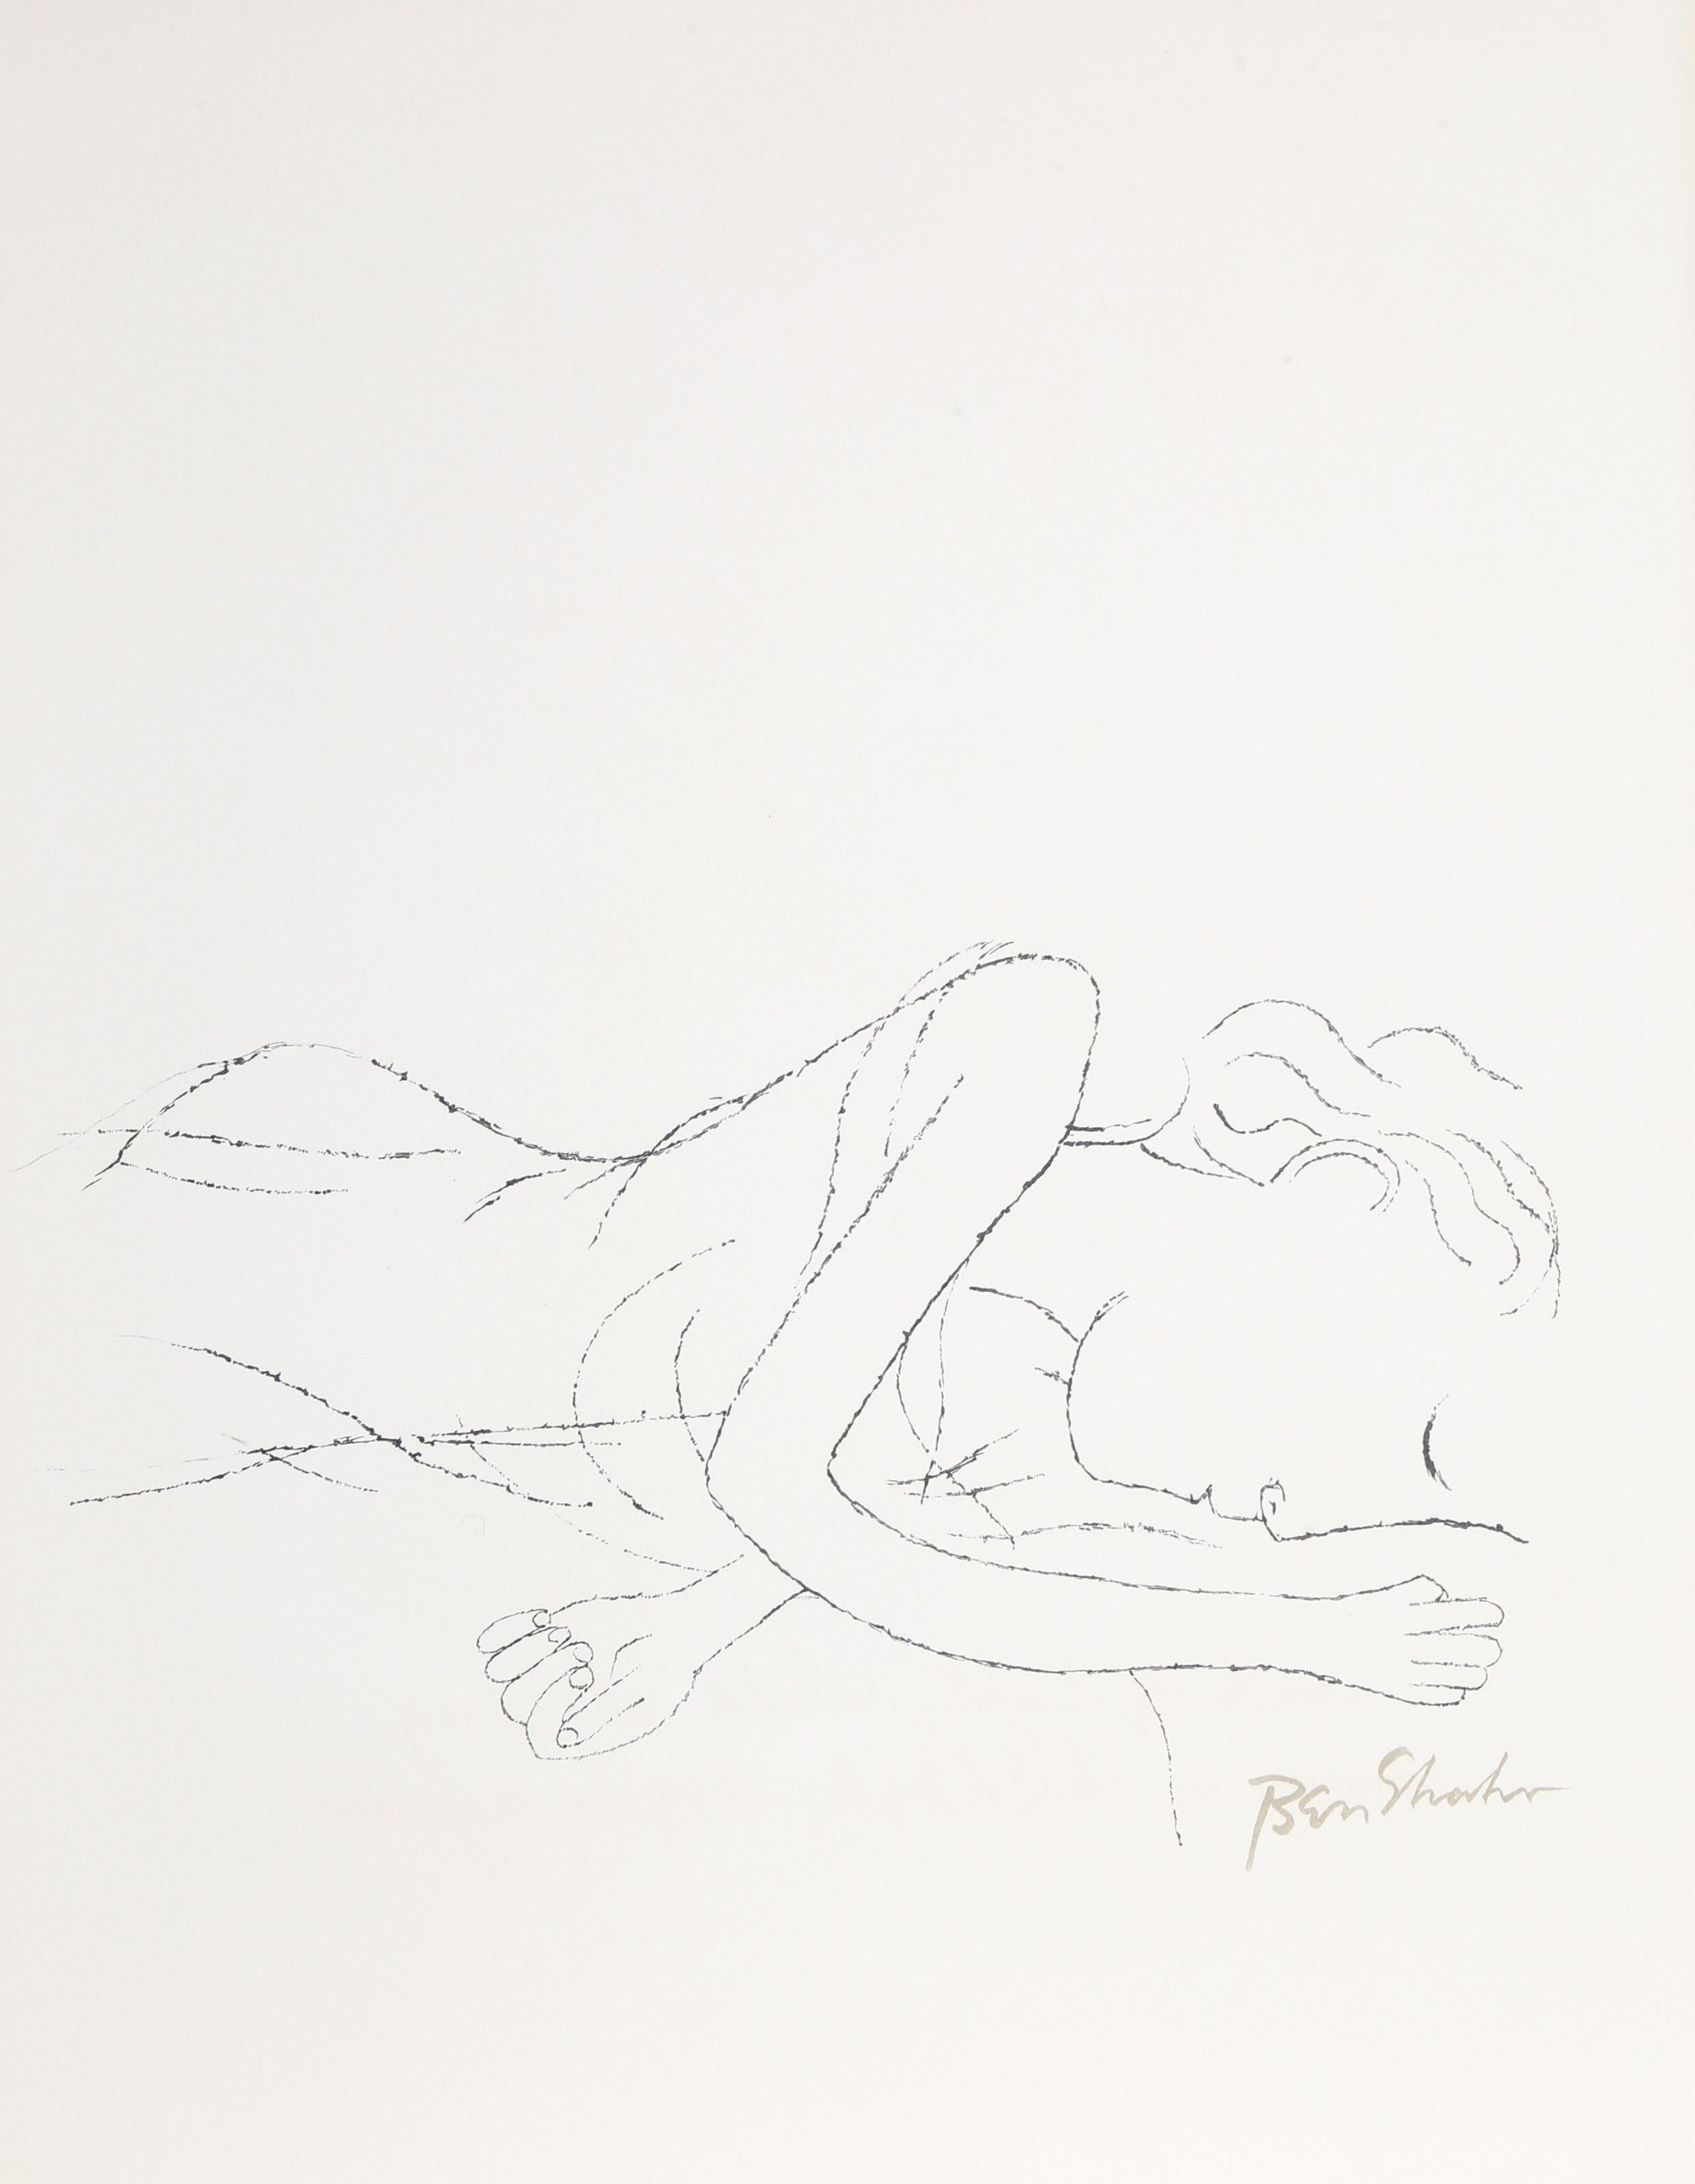 Artistics : Ben Shahn, Américain (1898 - 1969)
Titre : De la lumière, des femmes blanches endormies dans leur lit d'enfant du portfolio de Rilke.
Année : 1968
Moyen d'expression : Lithographie sur Arches, signée dans la plaque
Edition : 750
Taille :